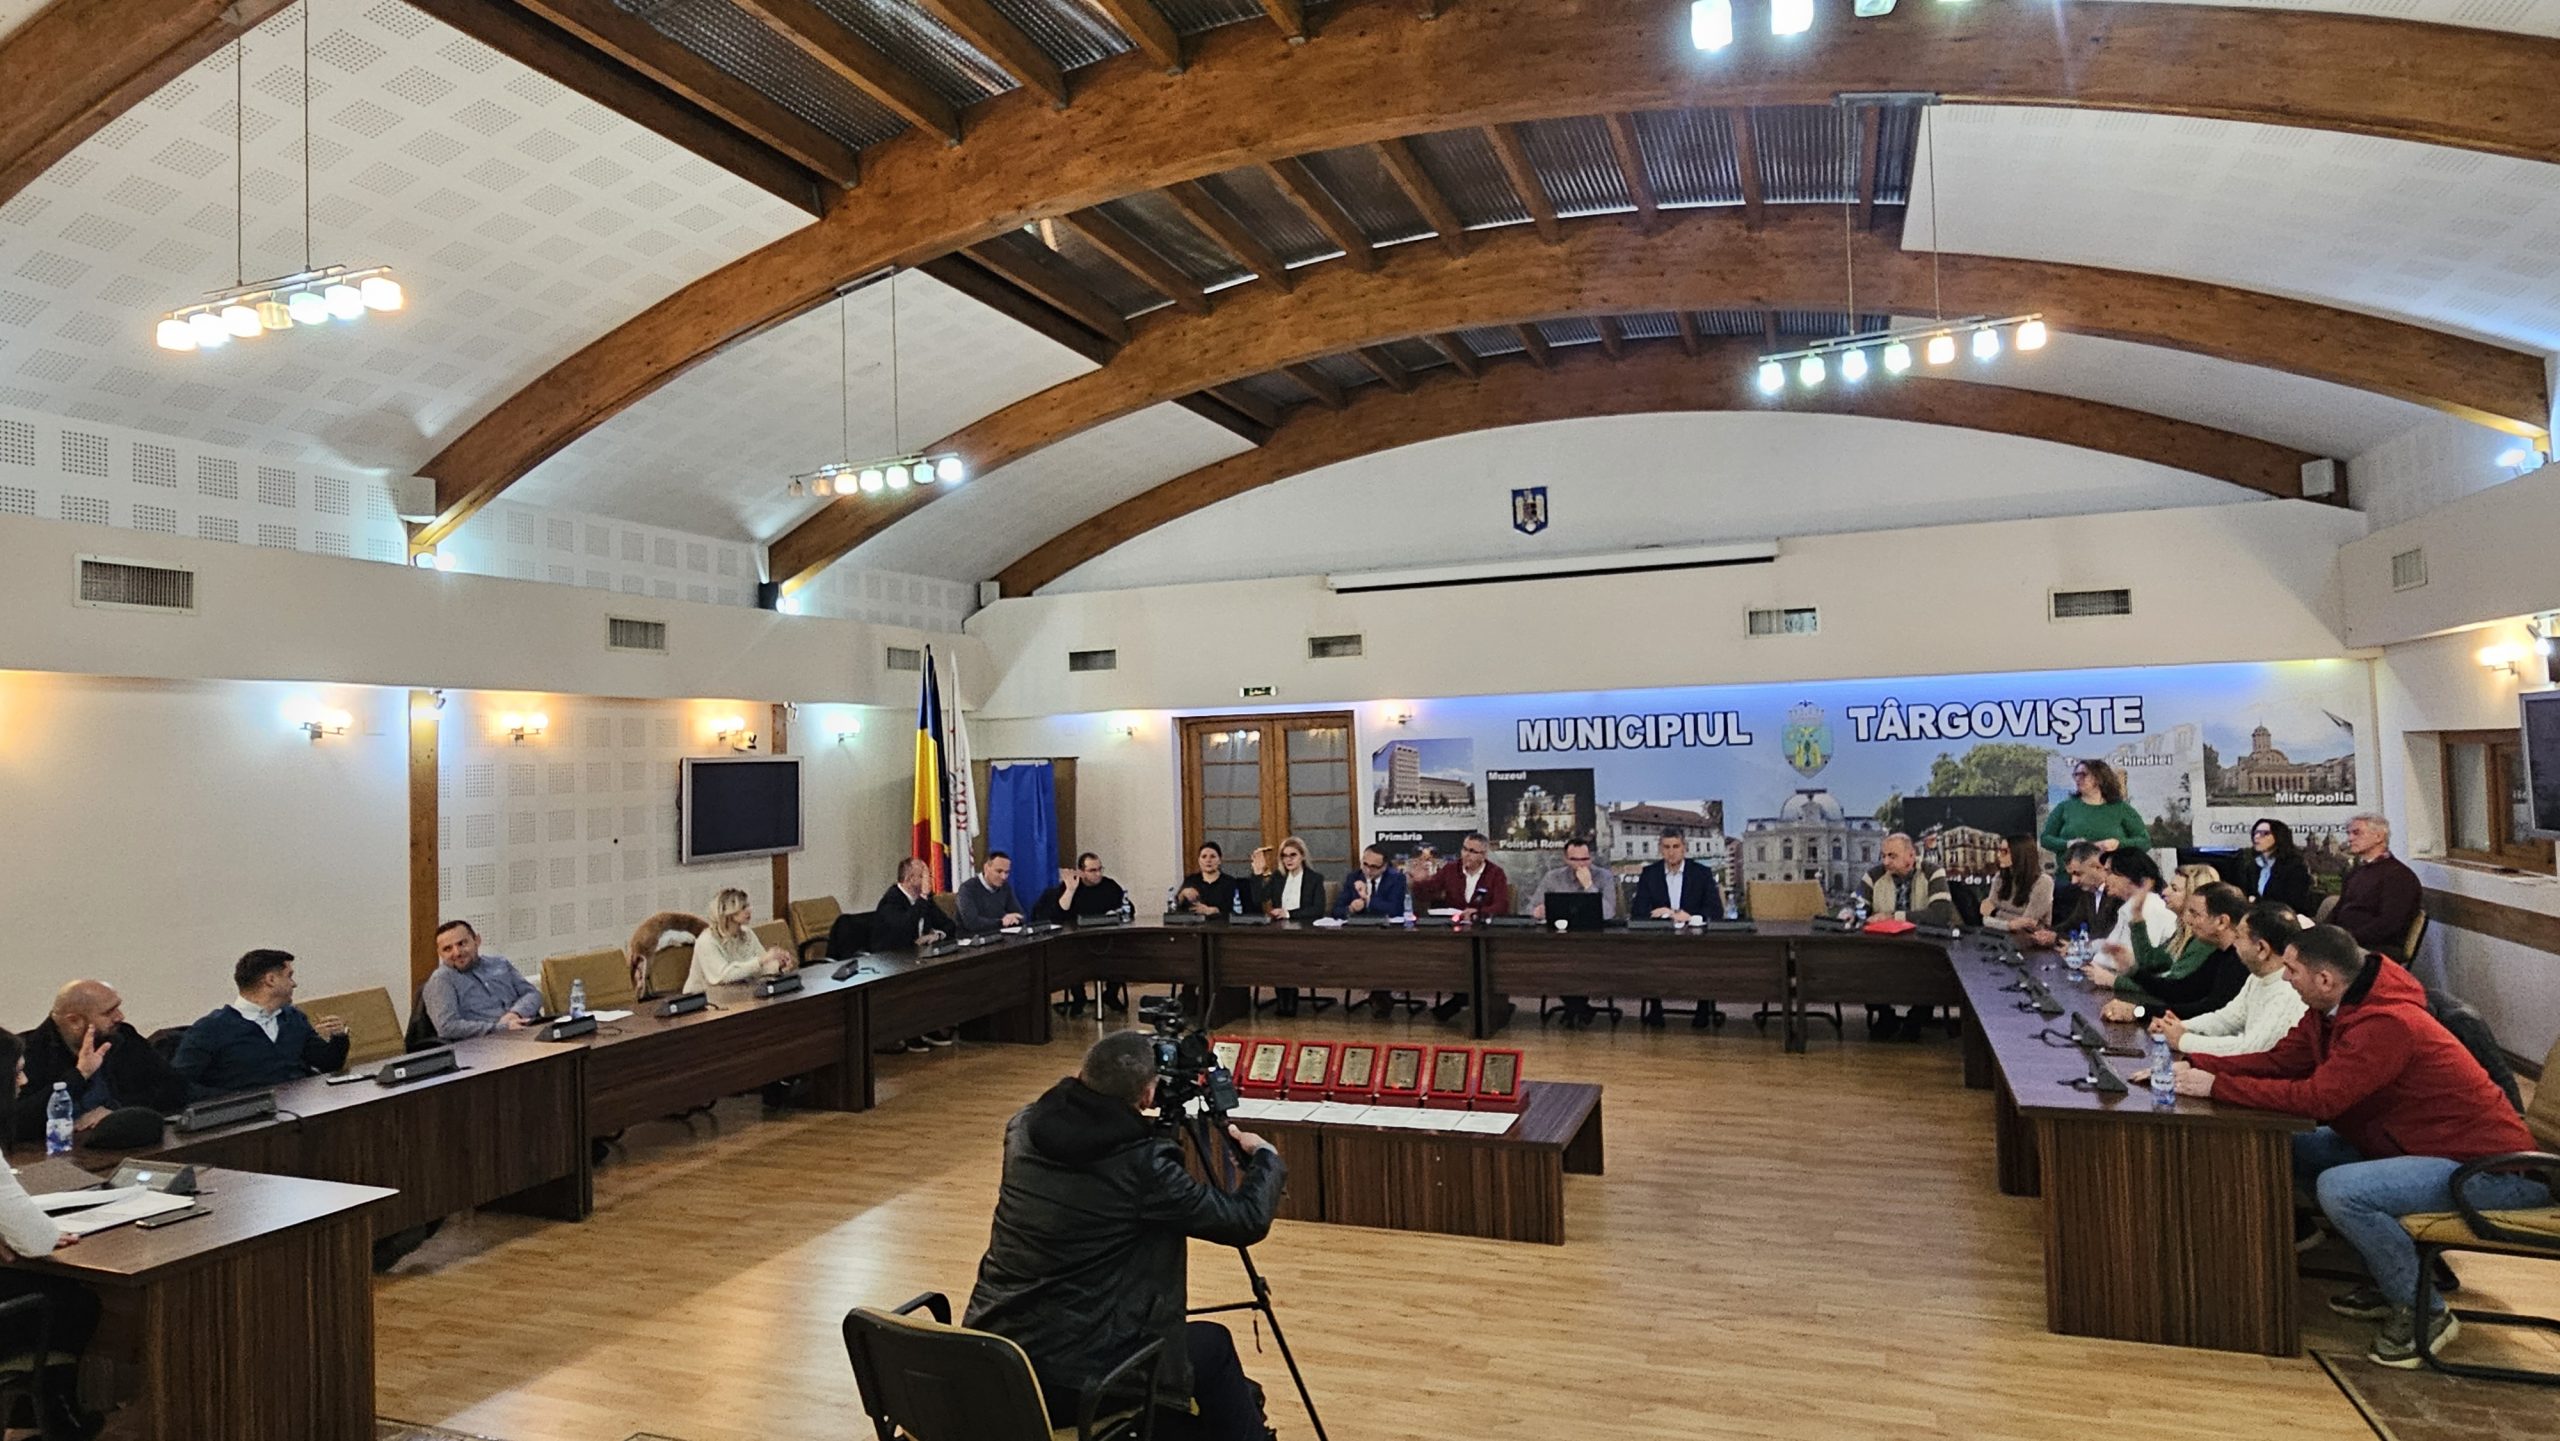 Bugetul municipiului Târgoviște pe anul 2024, aprobat fără votul consilierilor PNL, USR și Pro România. Și în acest an bugetul este axat pe investiții și dezvoltare.